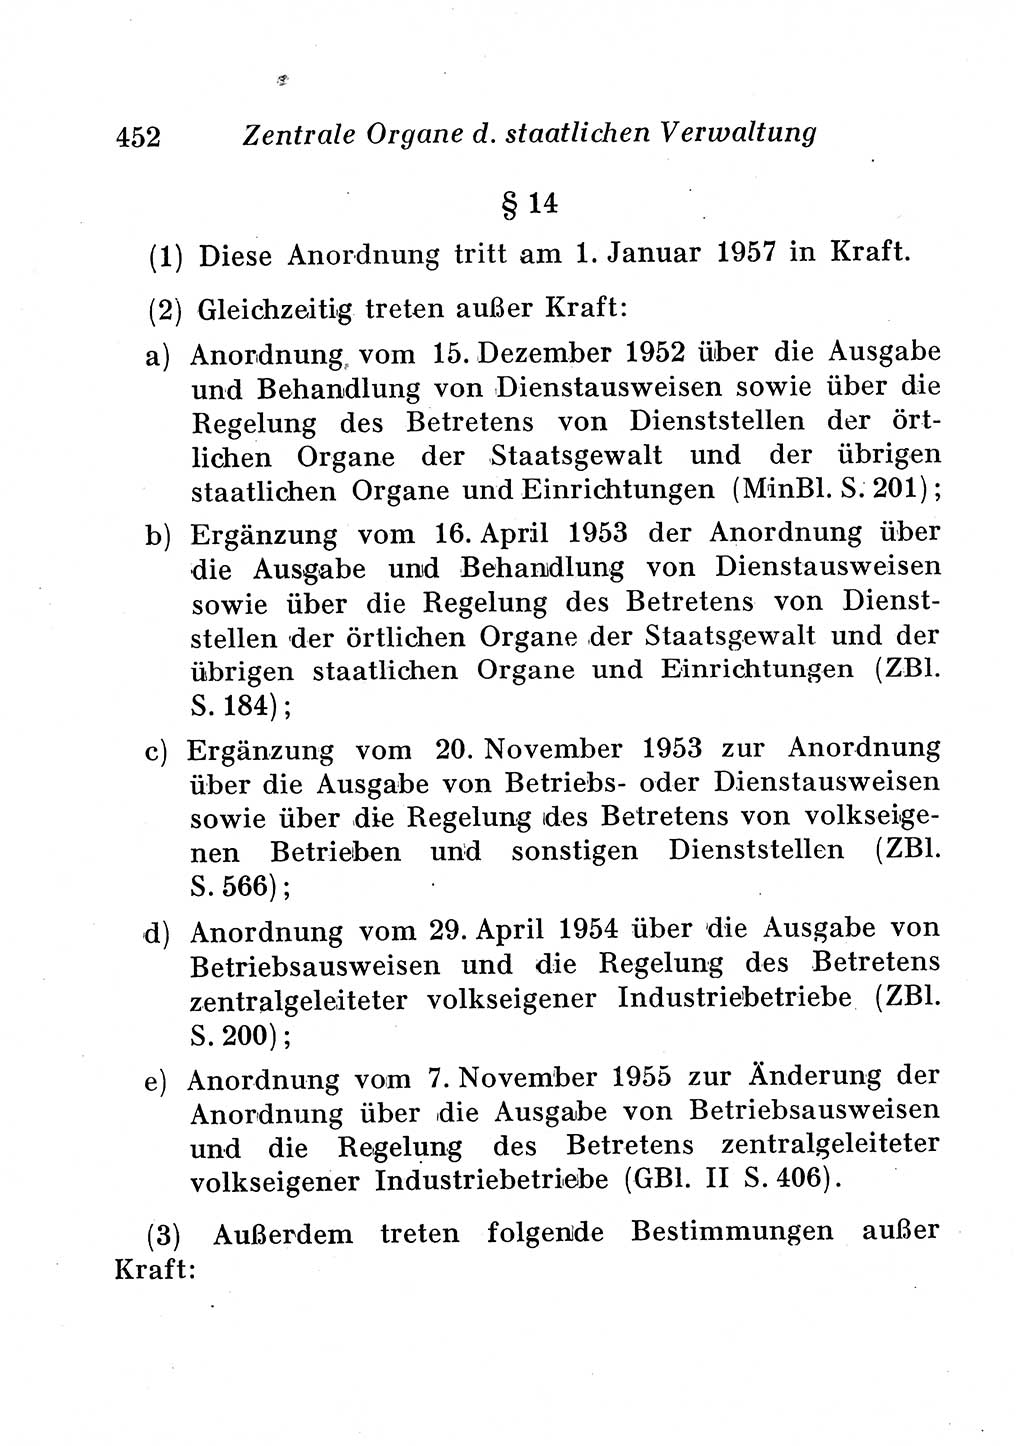 Staats- und verwaltungsrechtliche Gesetze der Deutschen Demokratischen Republik (DDR) 1958, Seite 452 (StVerwR Ges. DDR 1958, S. 452)